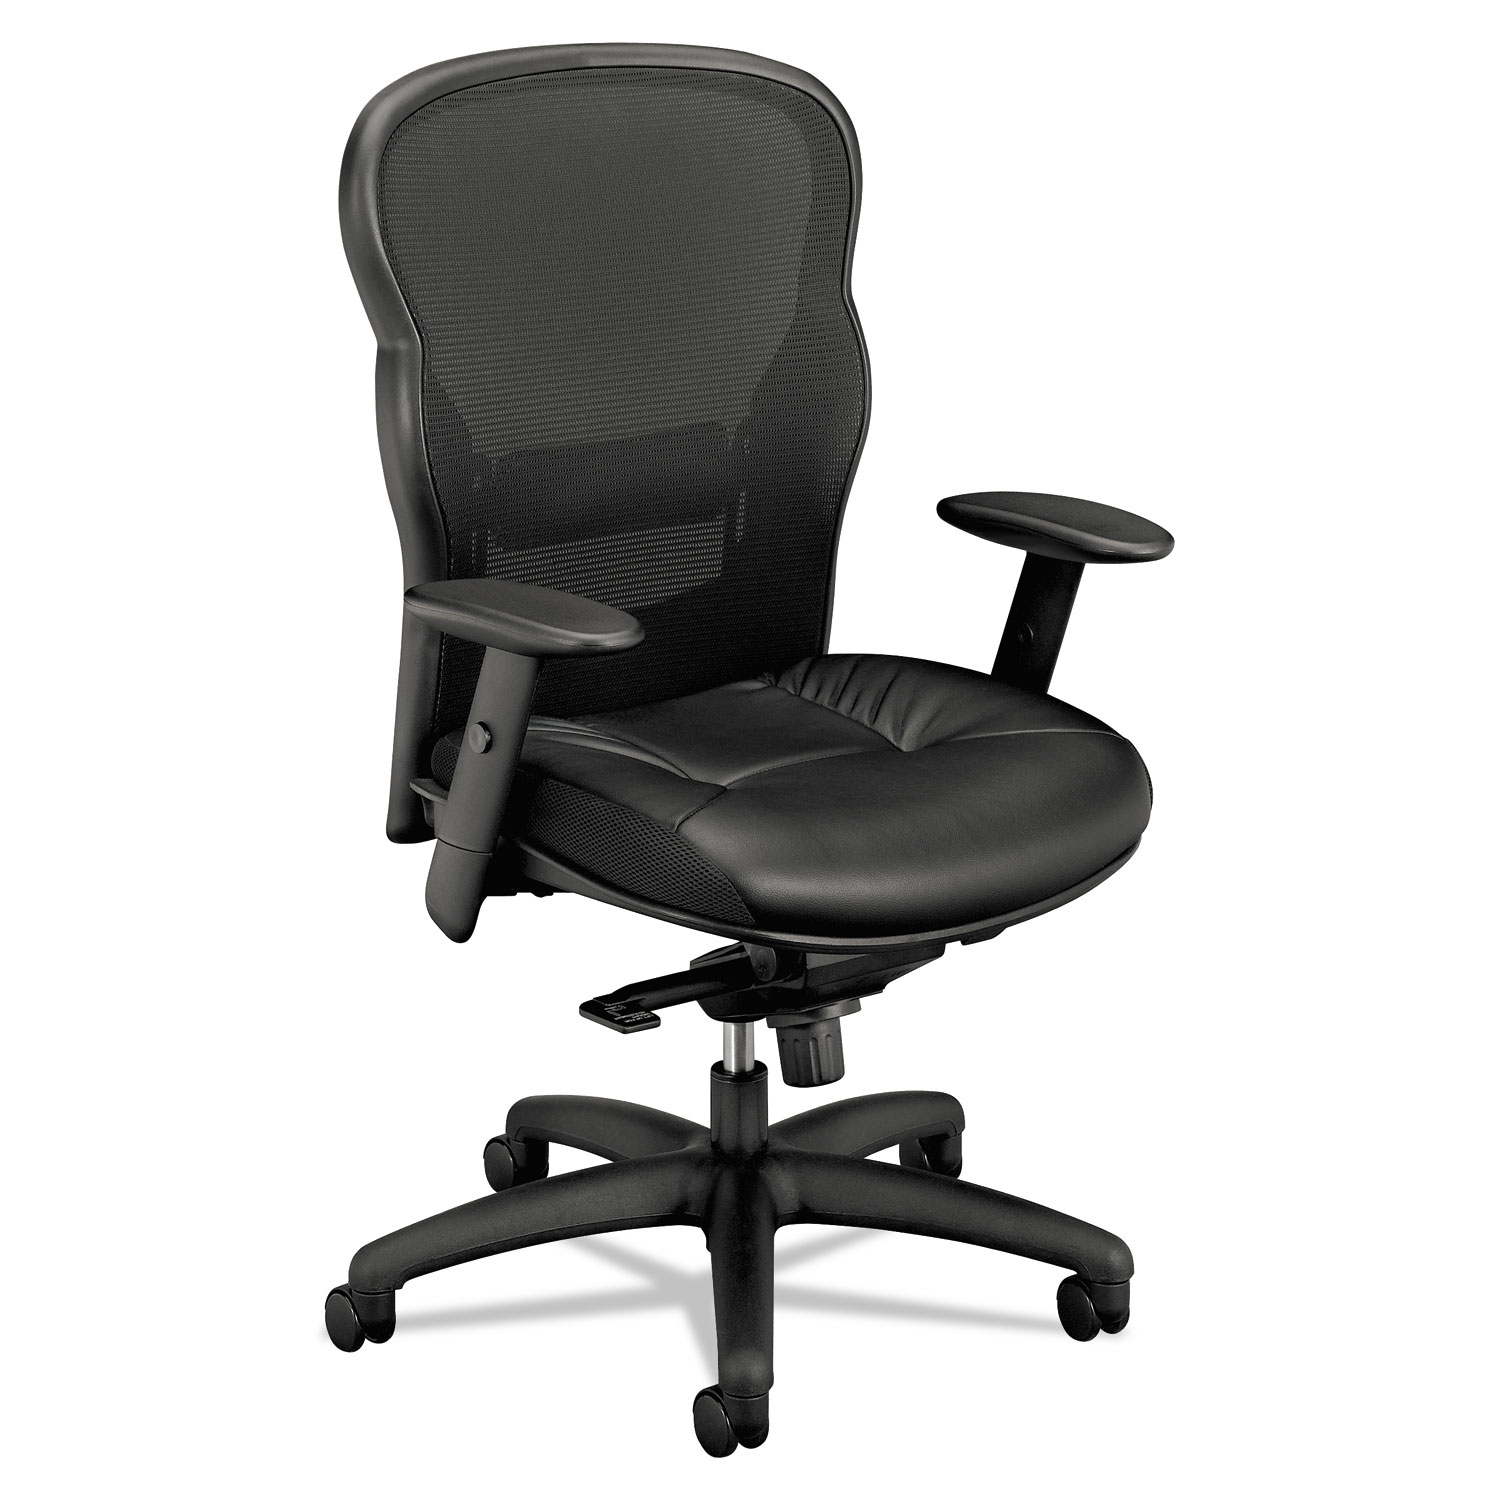 VL701 Series High-Back Swivel/Tilt Work Chair, Black Mesh/Leather